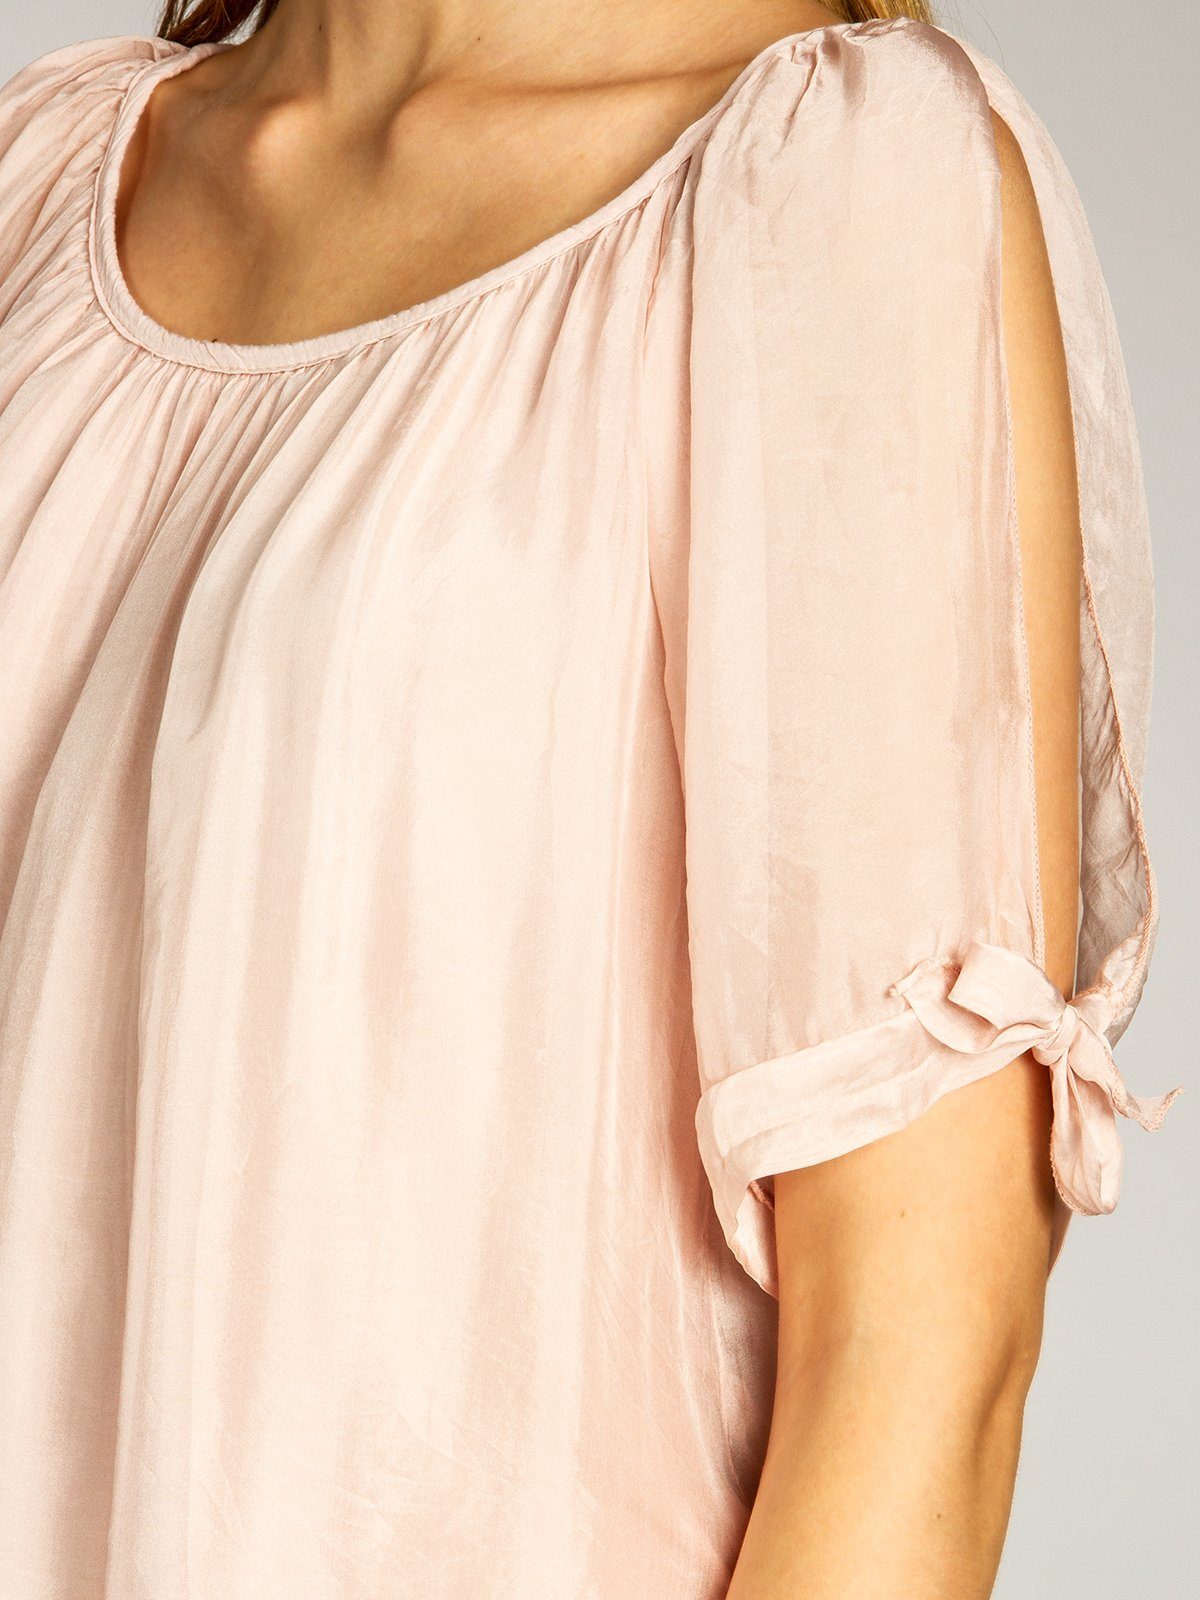 Caspar Shirtbluse BLU020 lange Seidenanteil Damen mit elegante Sommer rosa leichte Bluse